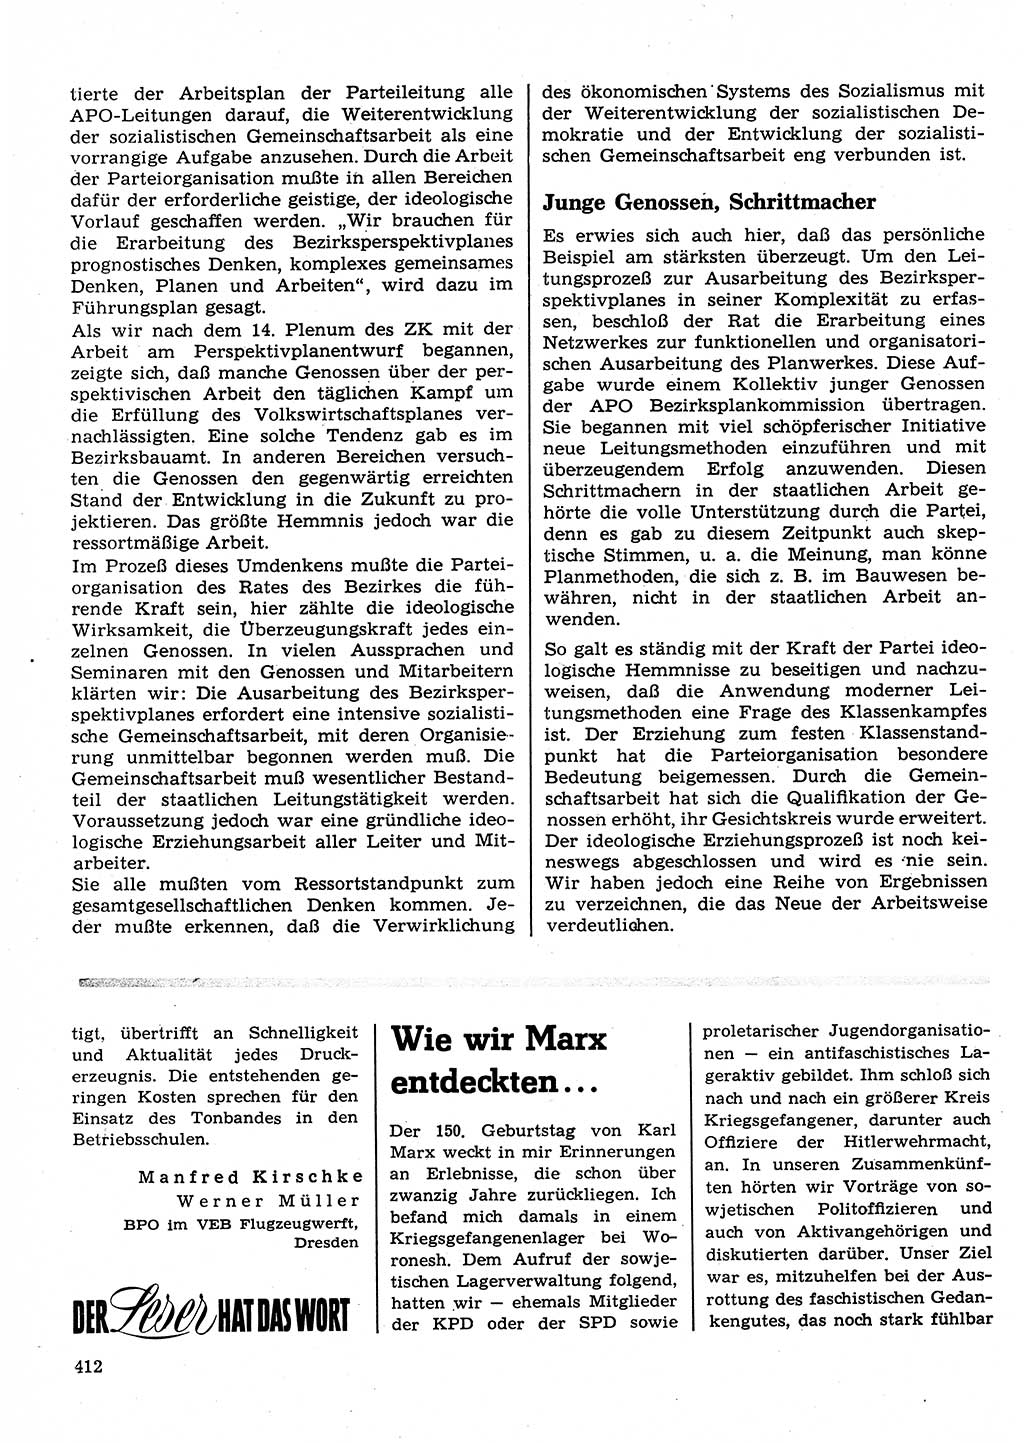 Neuer Weg (NW), Organ des Zentralkomitees (ZK) der SED (Sozialistische Einheitspartei Deutschlands) für Fragen des Parteilebens, 23. Jahrgang [Deutsche Demokratische Republik (DDR)] 1968, Seite 412 (NW ZK SED DDR 1968, S. 412)